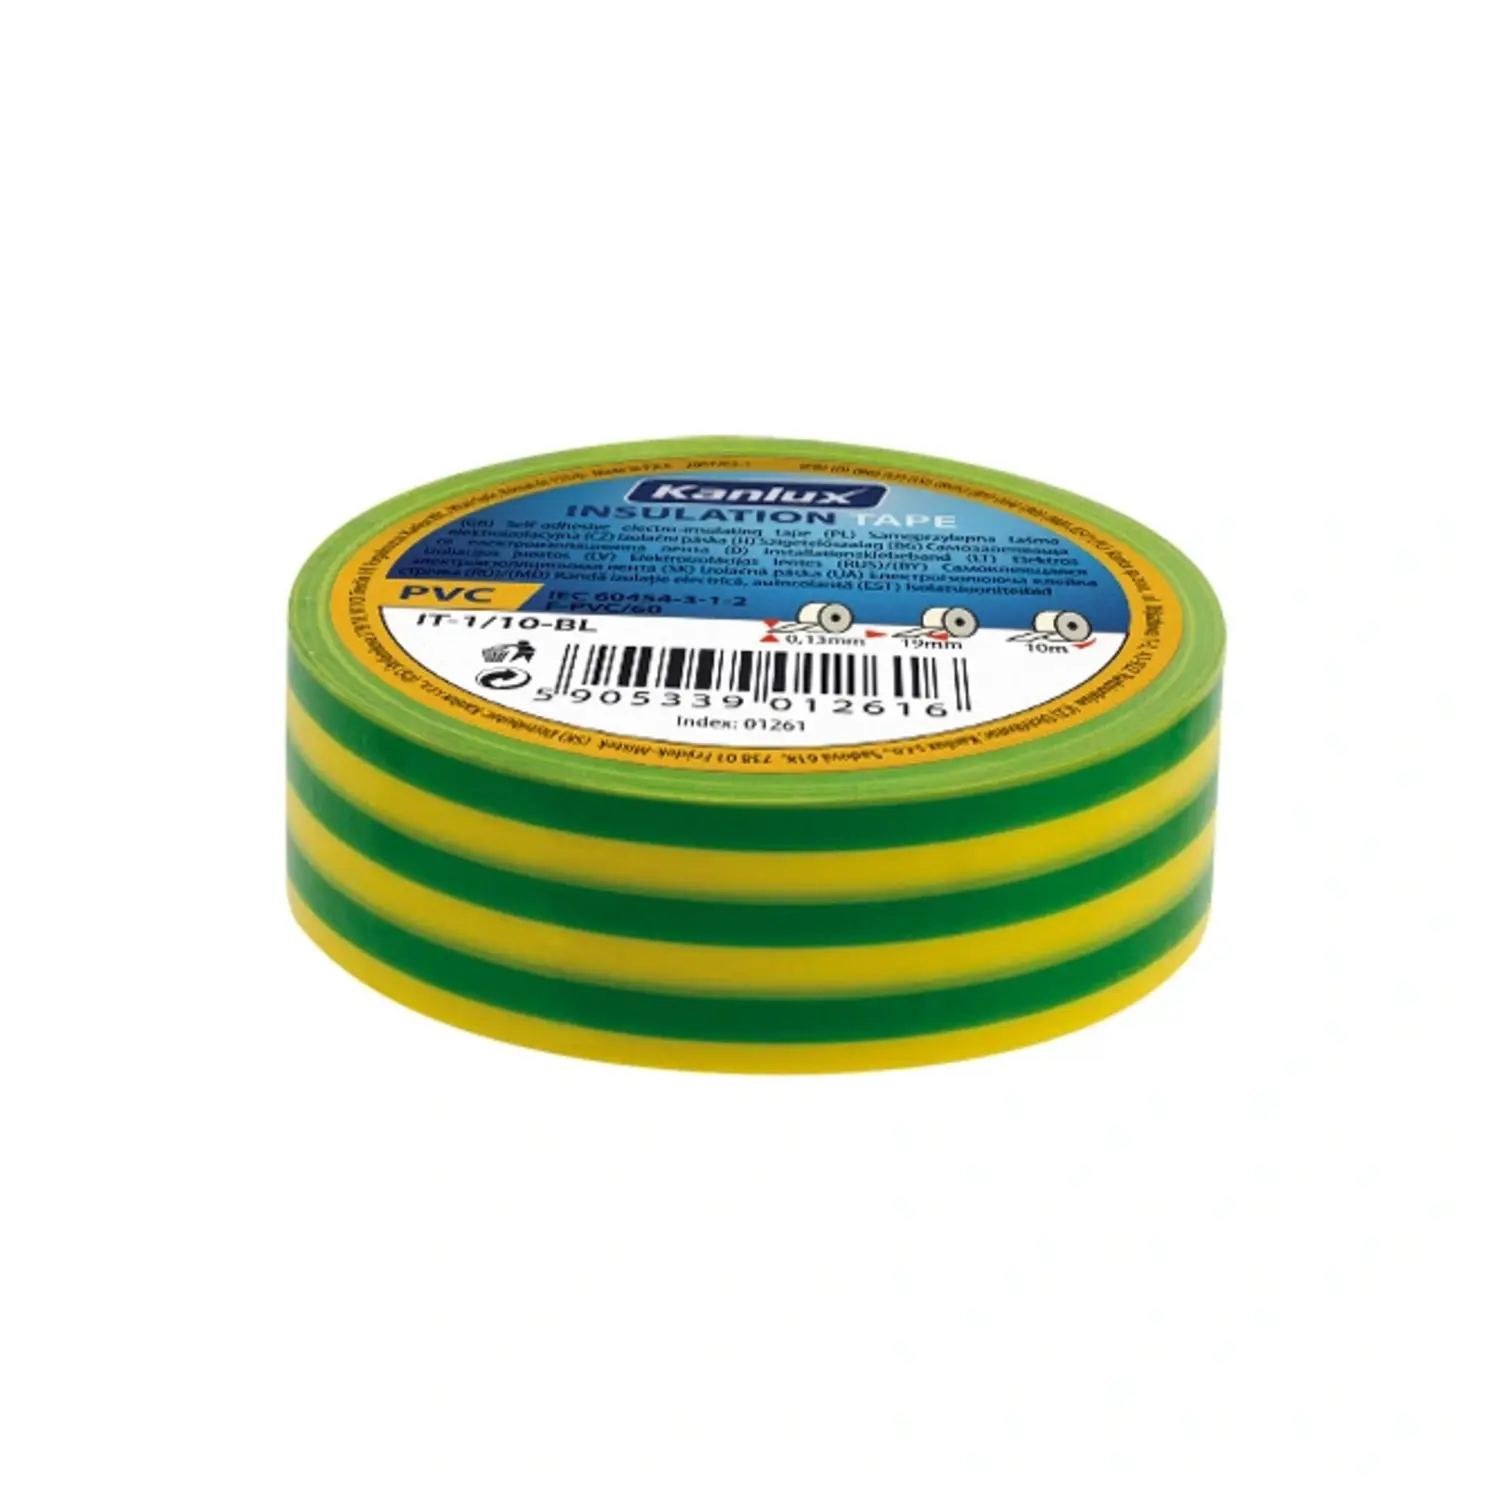 immagine del prodotto nastro isolante adesivo elettricista isolante elettrico 19 mm giallo verde 20 mt